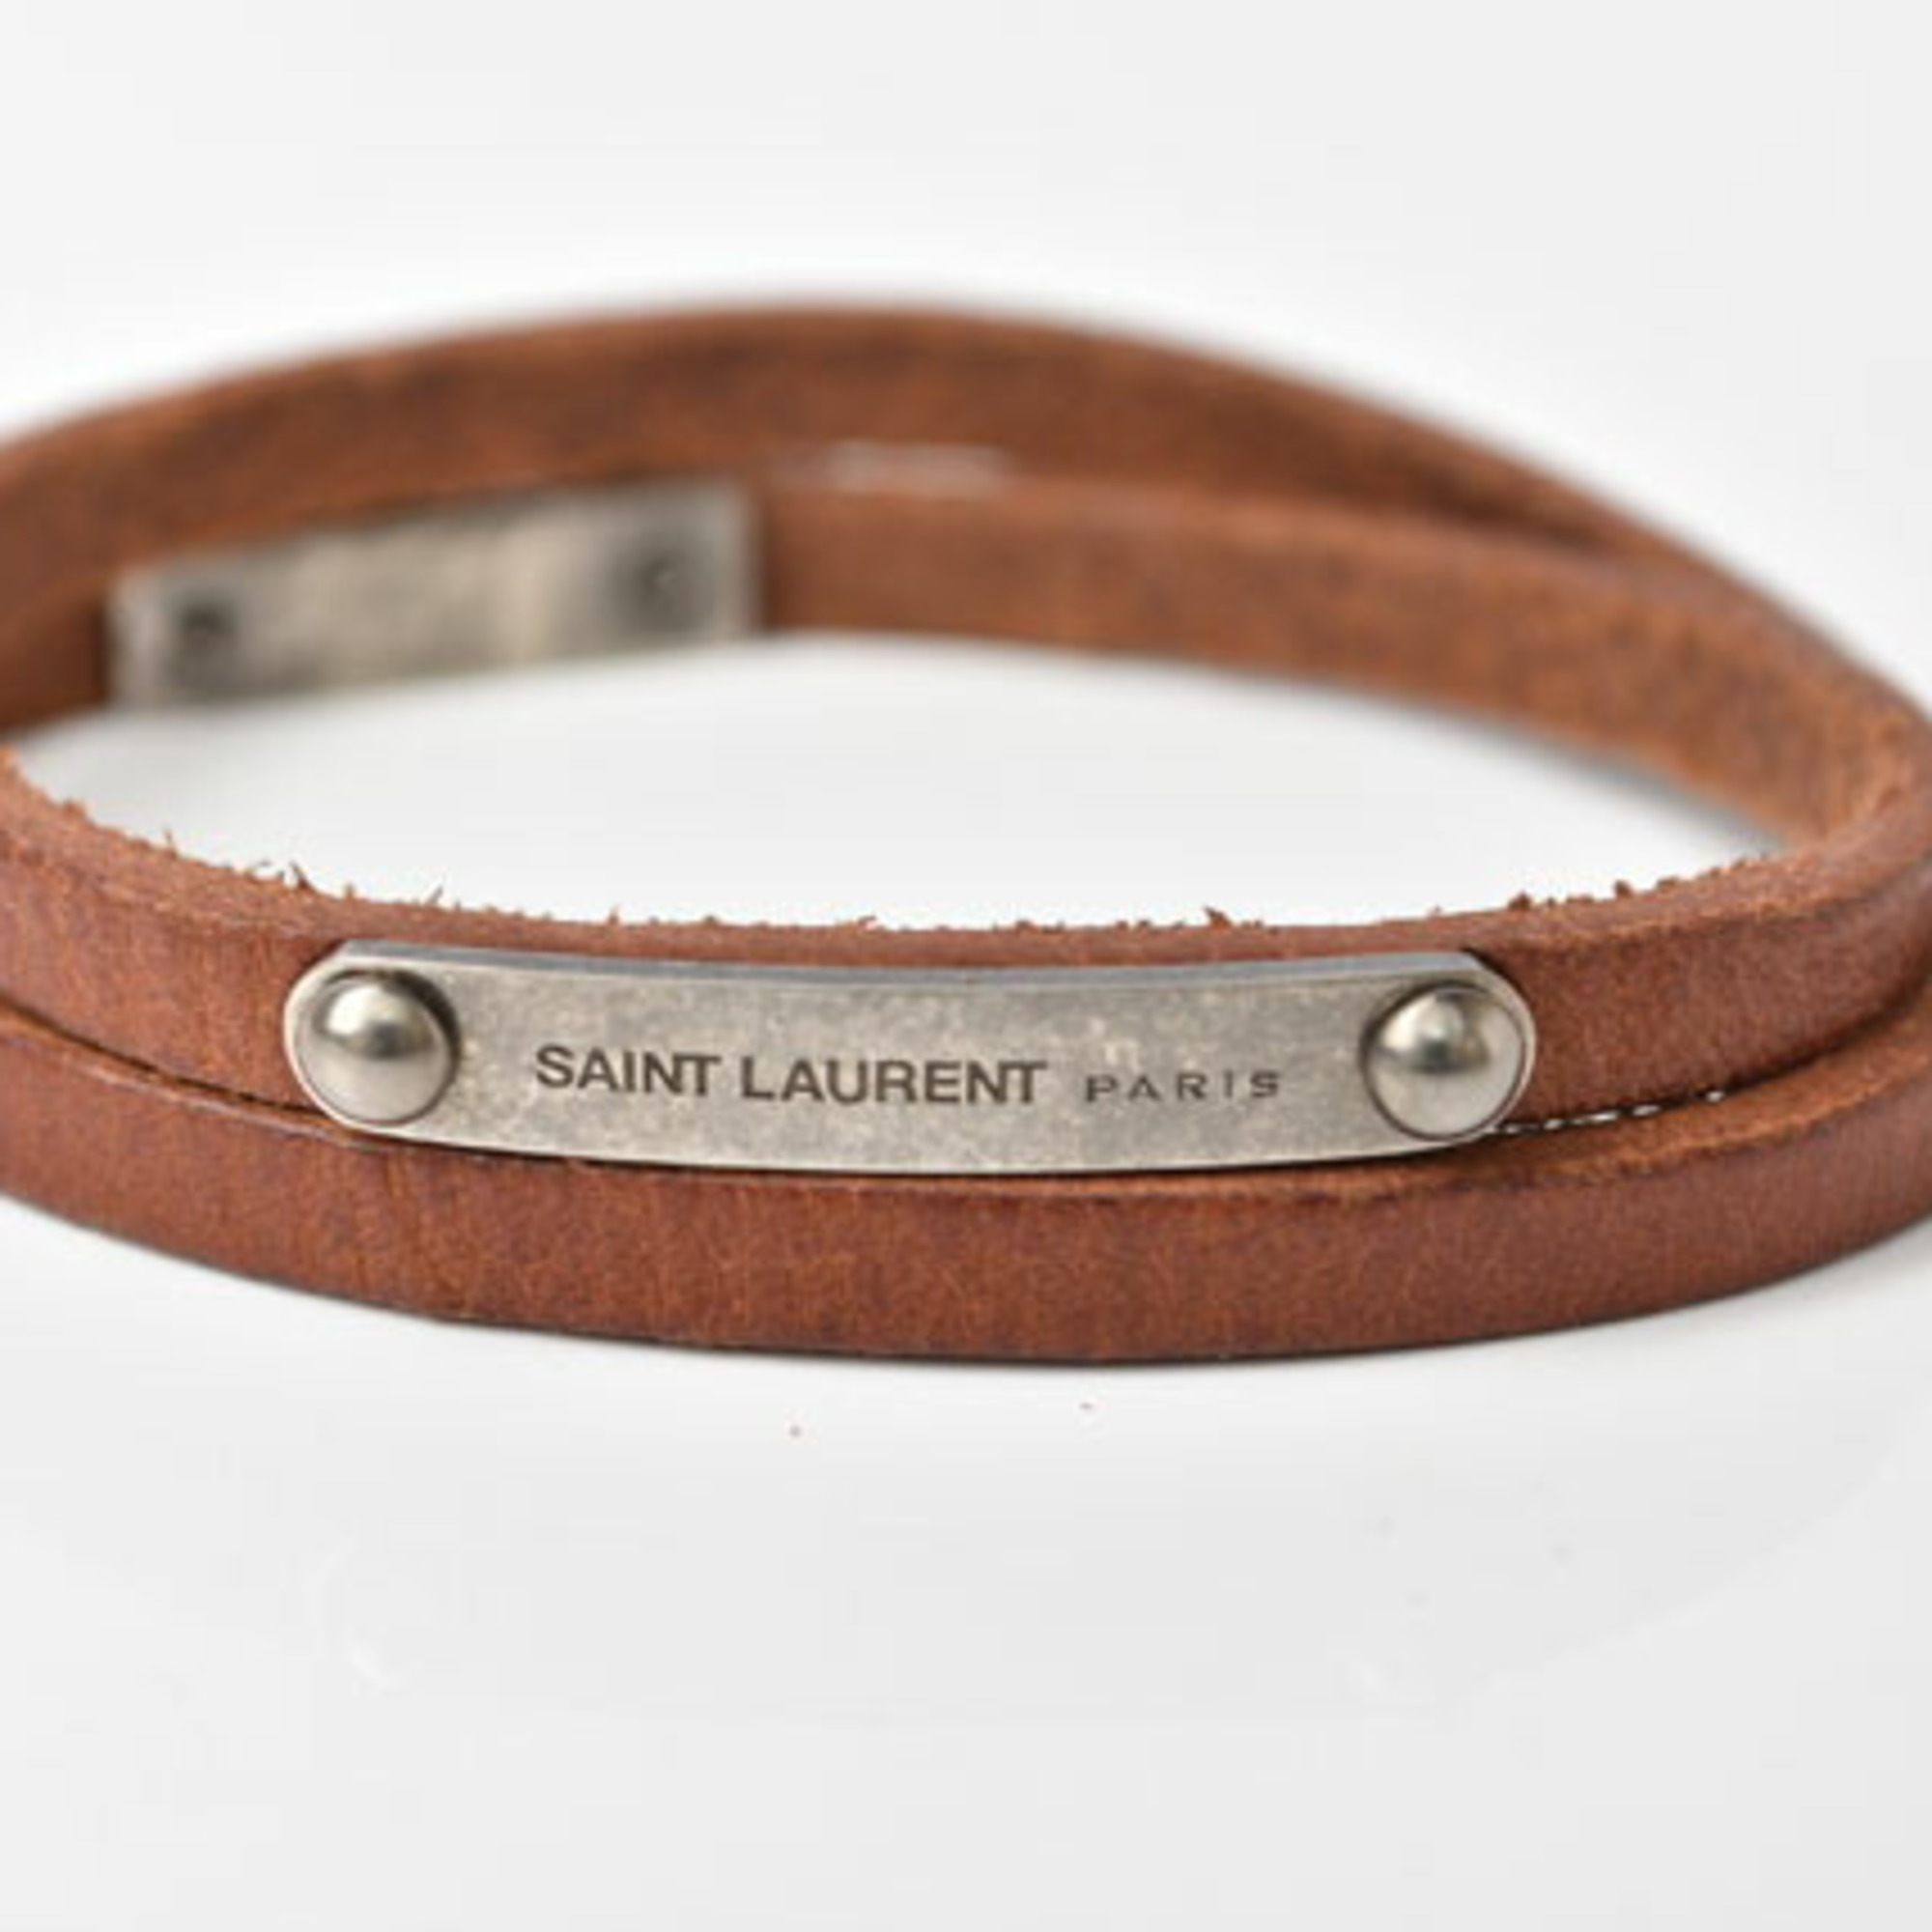 Saint Laurent Bangle Bracelet SAINT LAURENT Leather Strap Silver